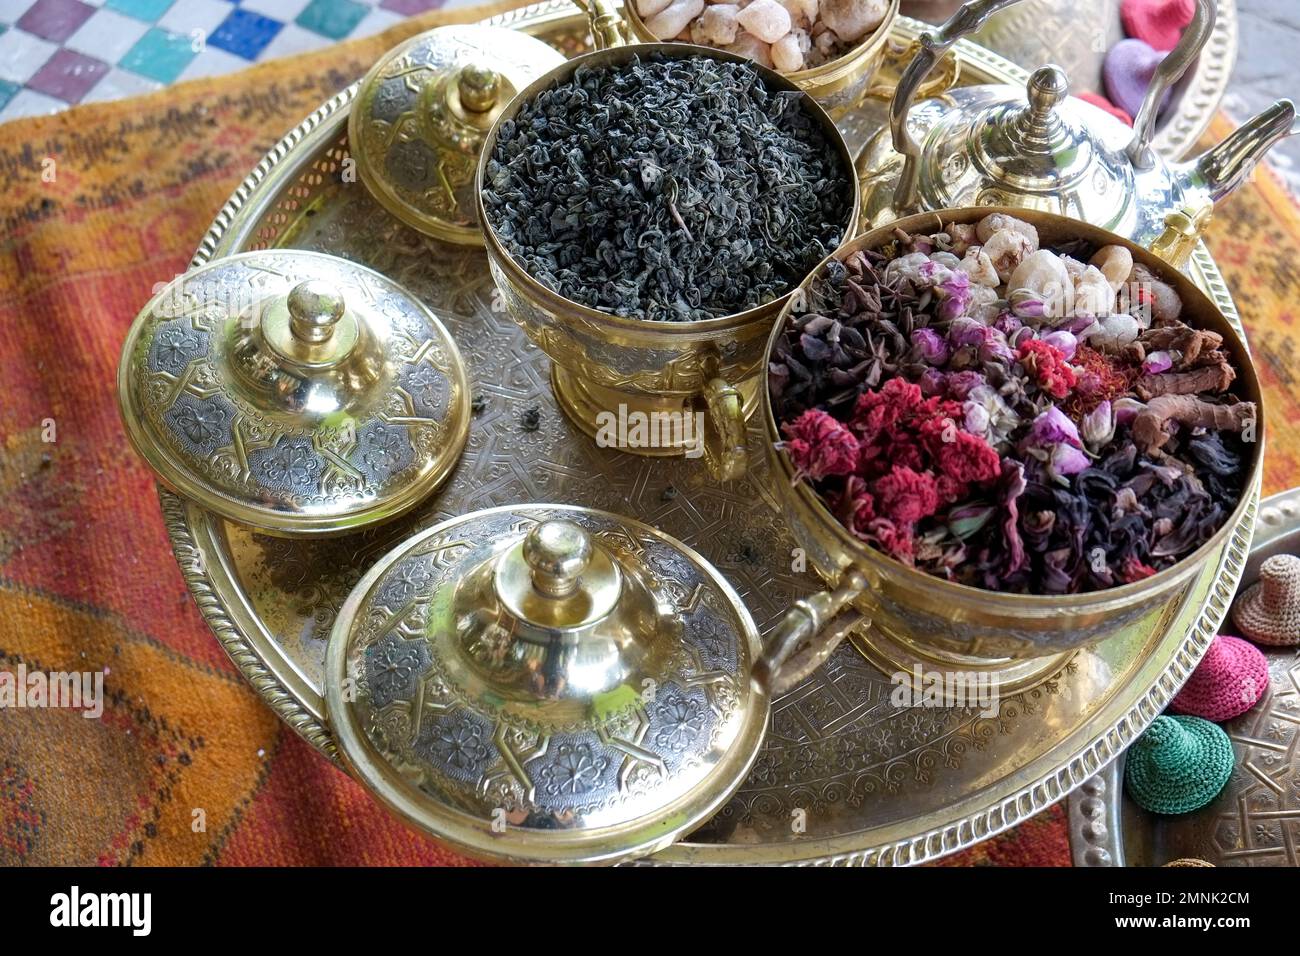 Marrakech, Maroc ensemble de thé aux herbes, fleurs et épices Banque D'Images